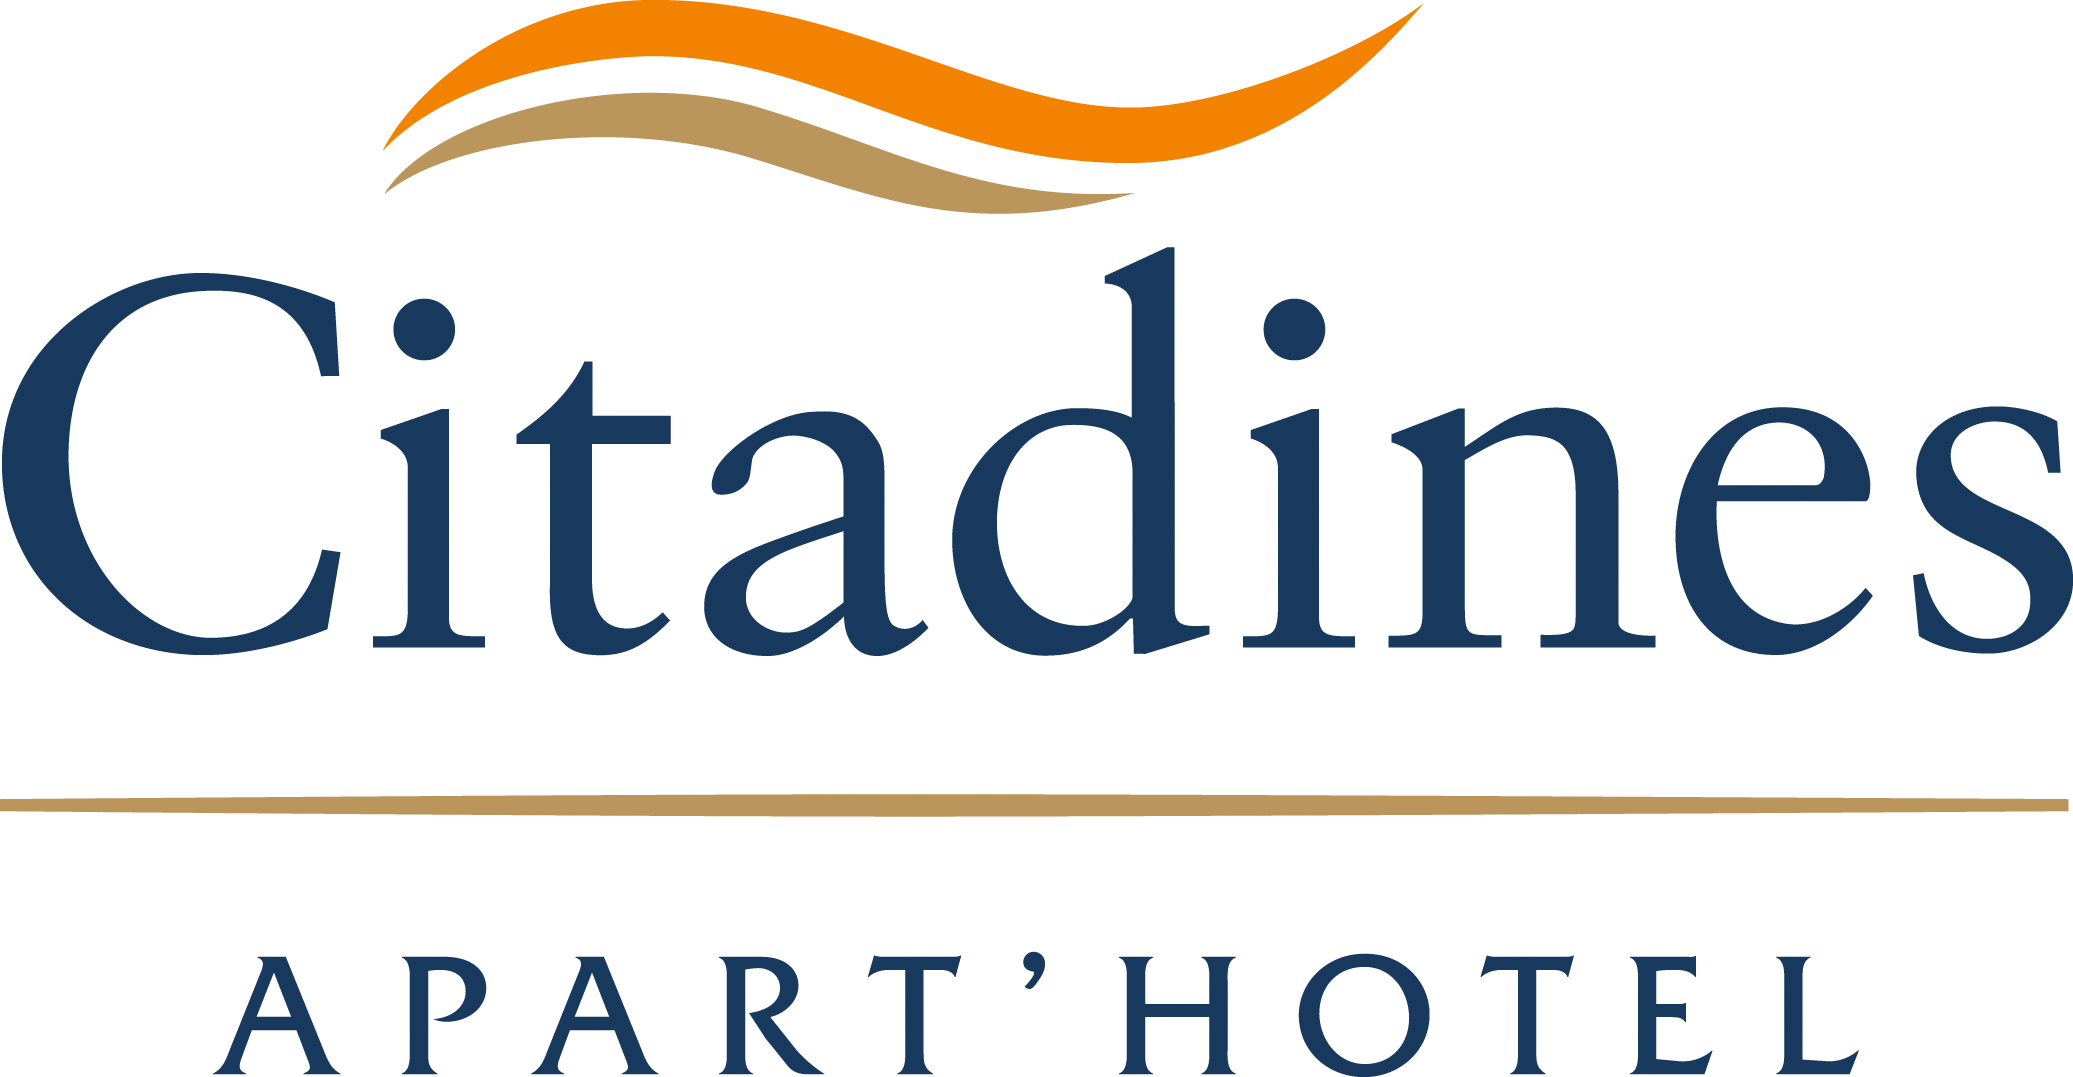 Citadines Hotel Logo - Citadines Apart Hotel Logo